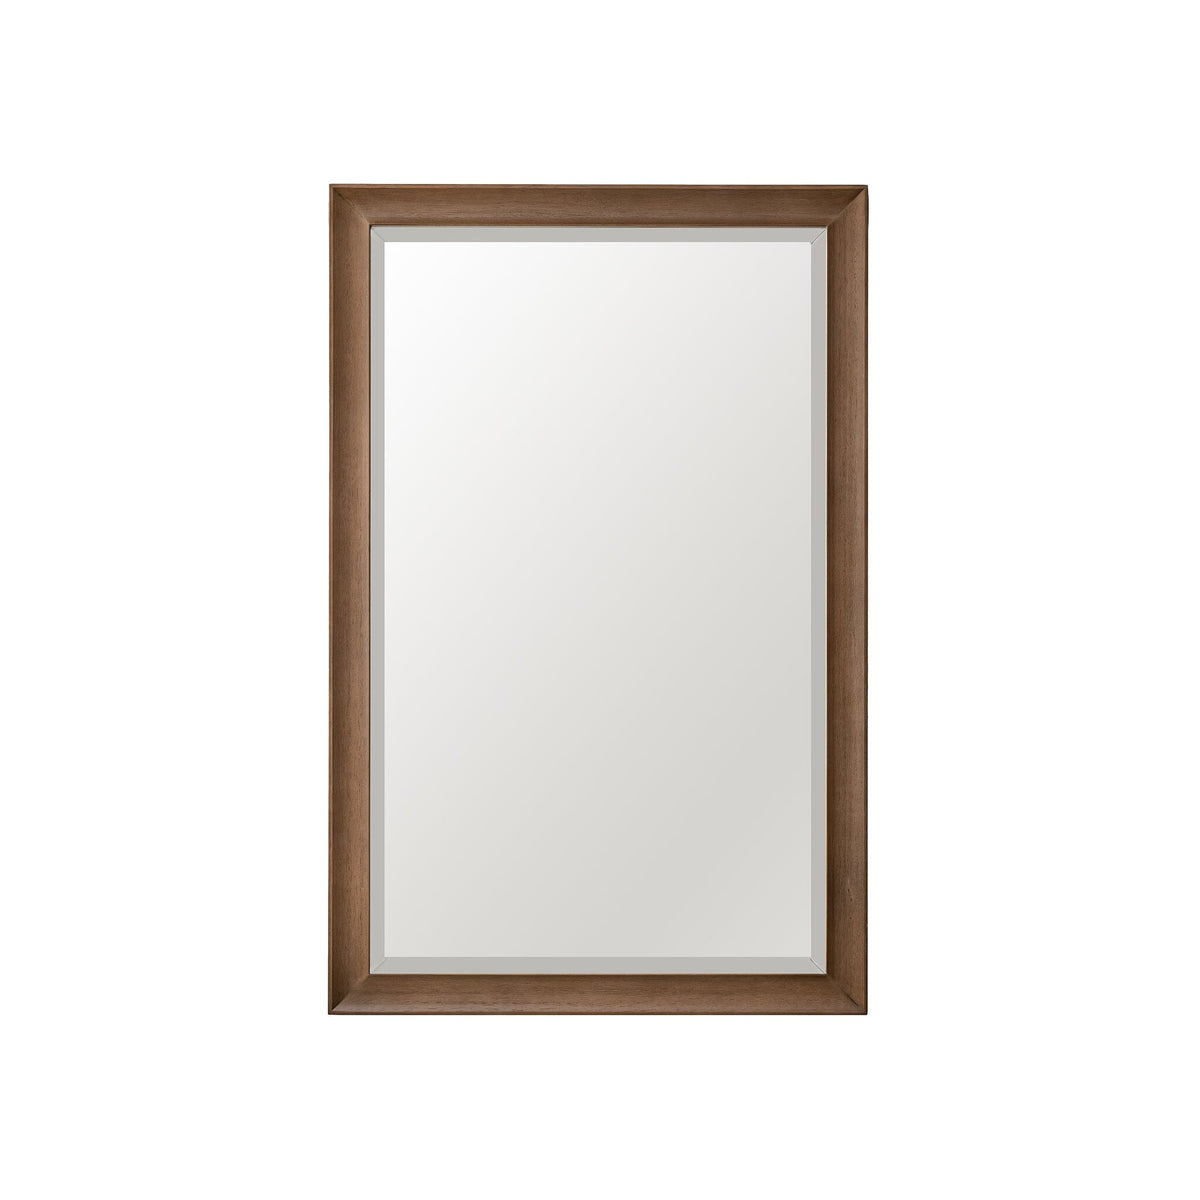 26" Glenbrooke Mirror, Whitewashed Walnut